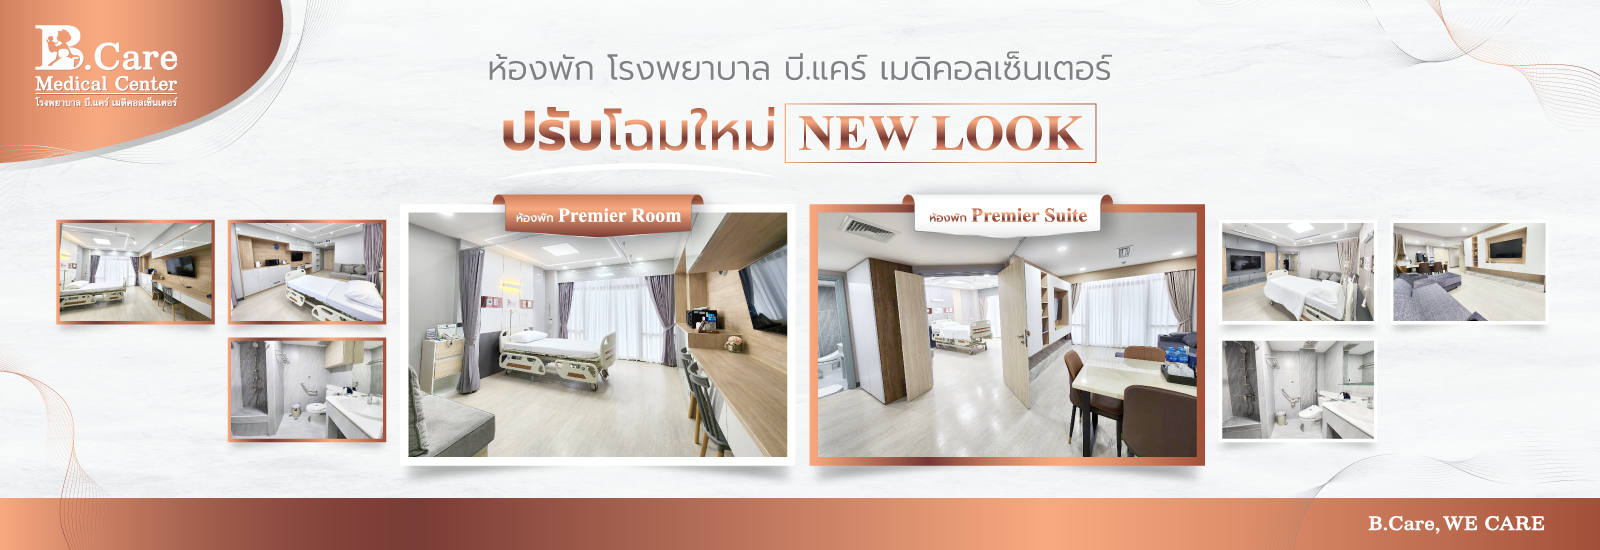 ปรับโฉมใหม่ ห้องพักผู้ป่วย Premier Room &amp; Premier Suite รพ.บี.แคร์ฯ